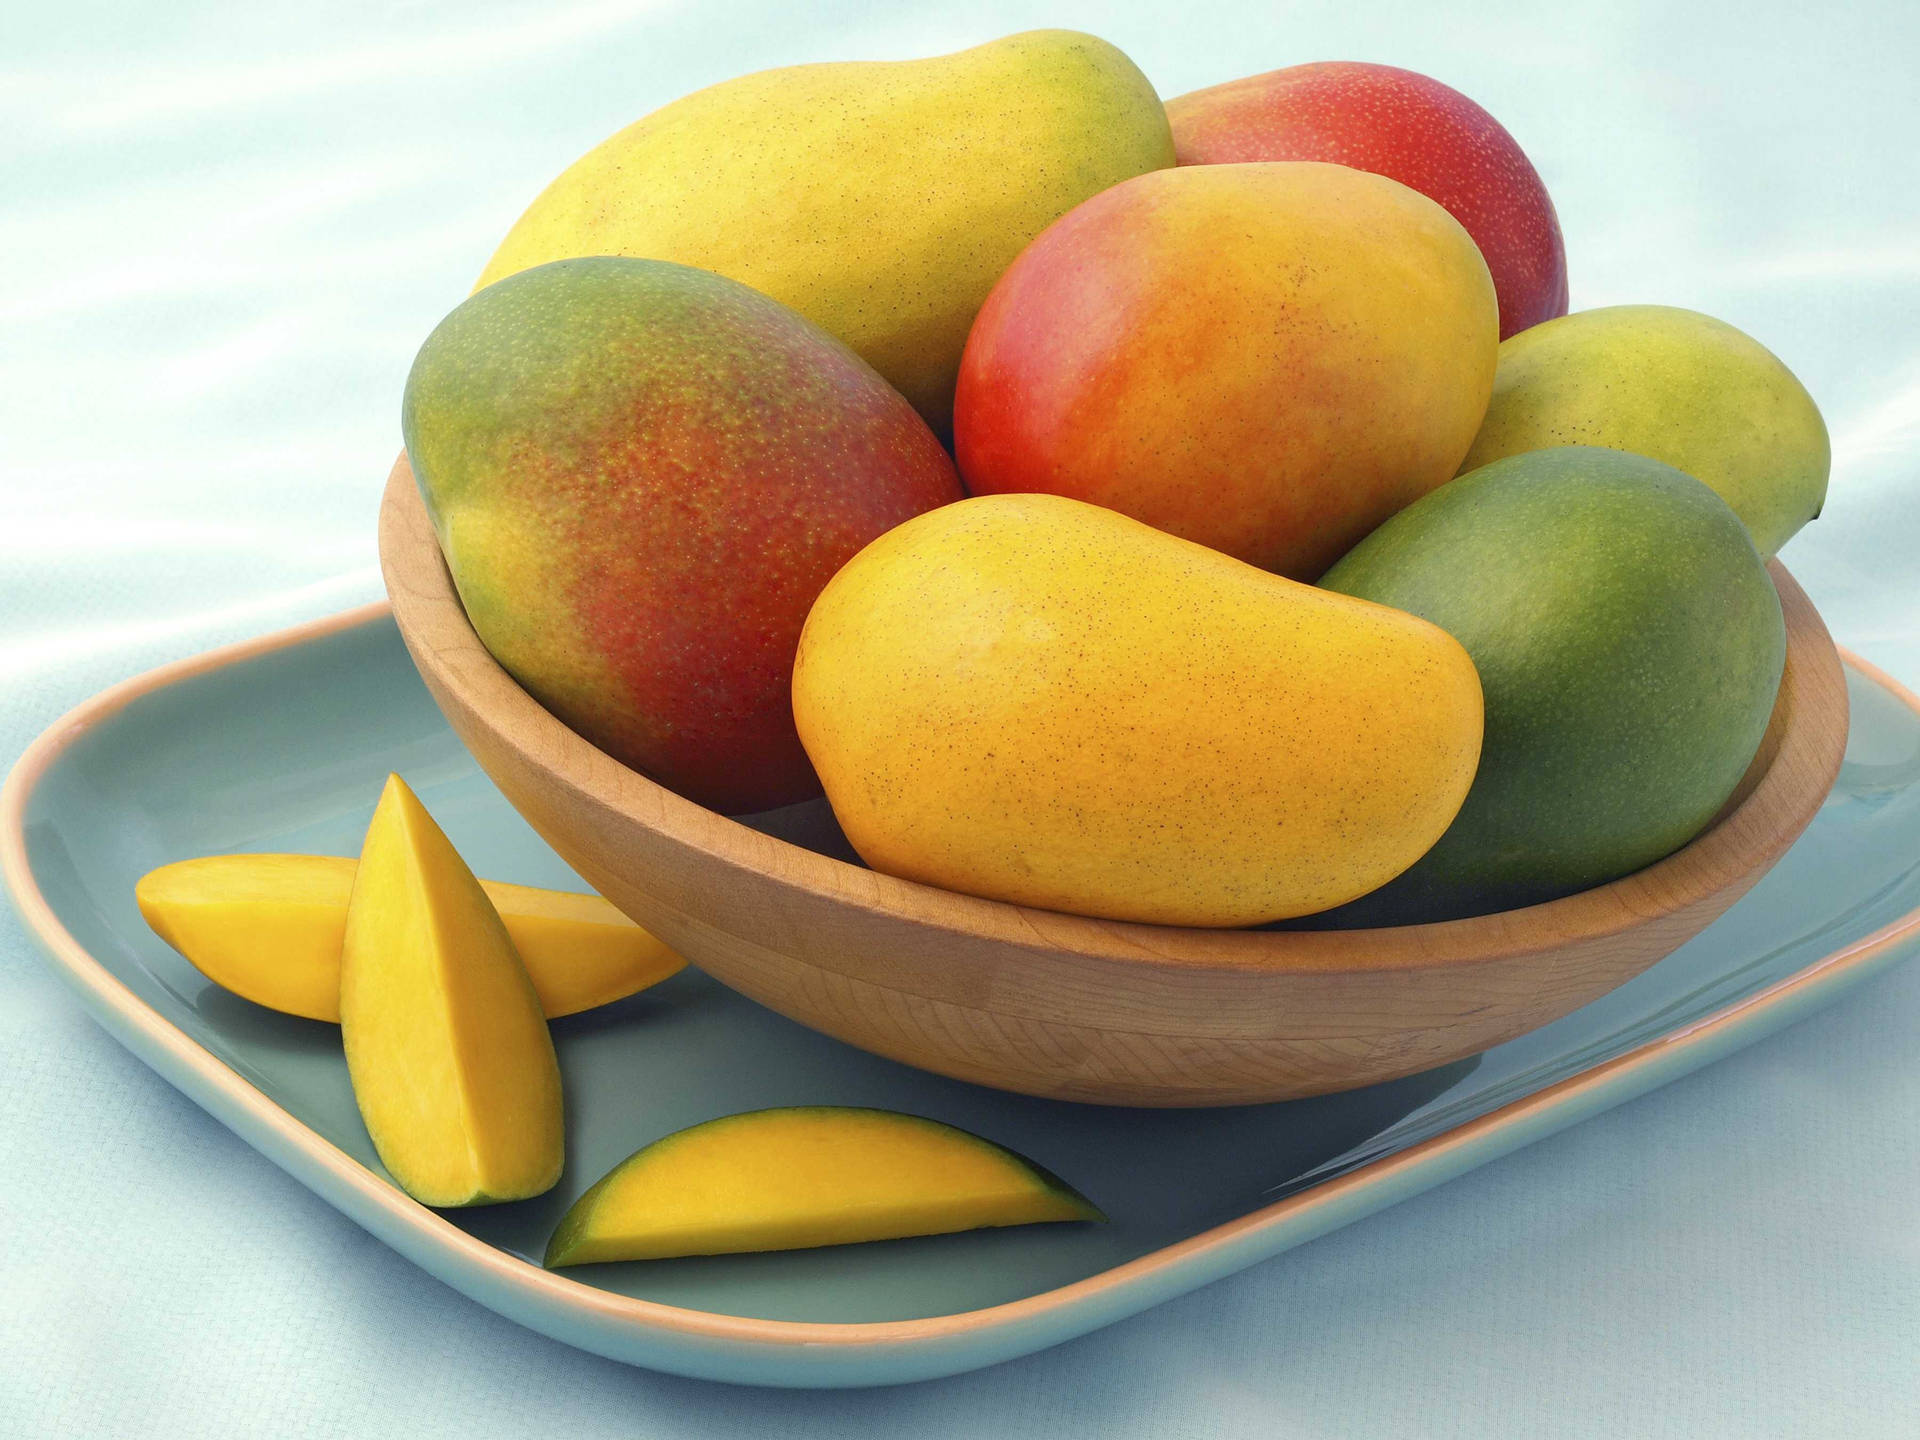 Caption: Delightful Mango Preparation Background